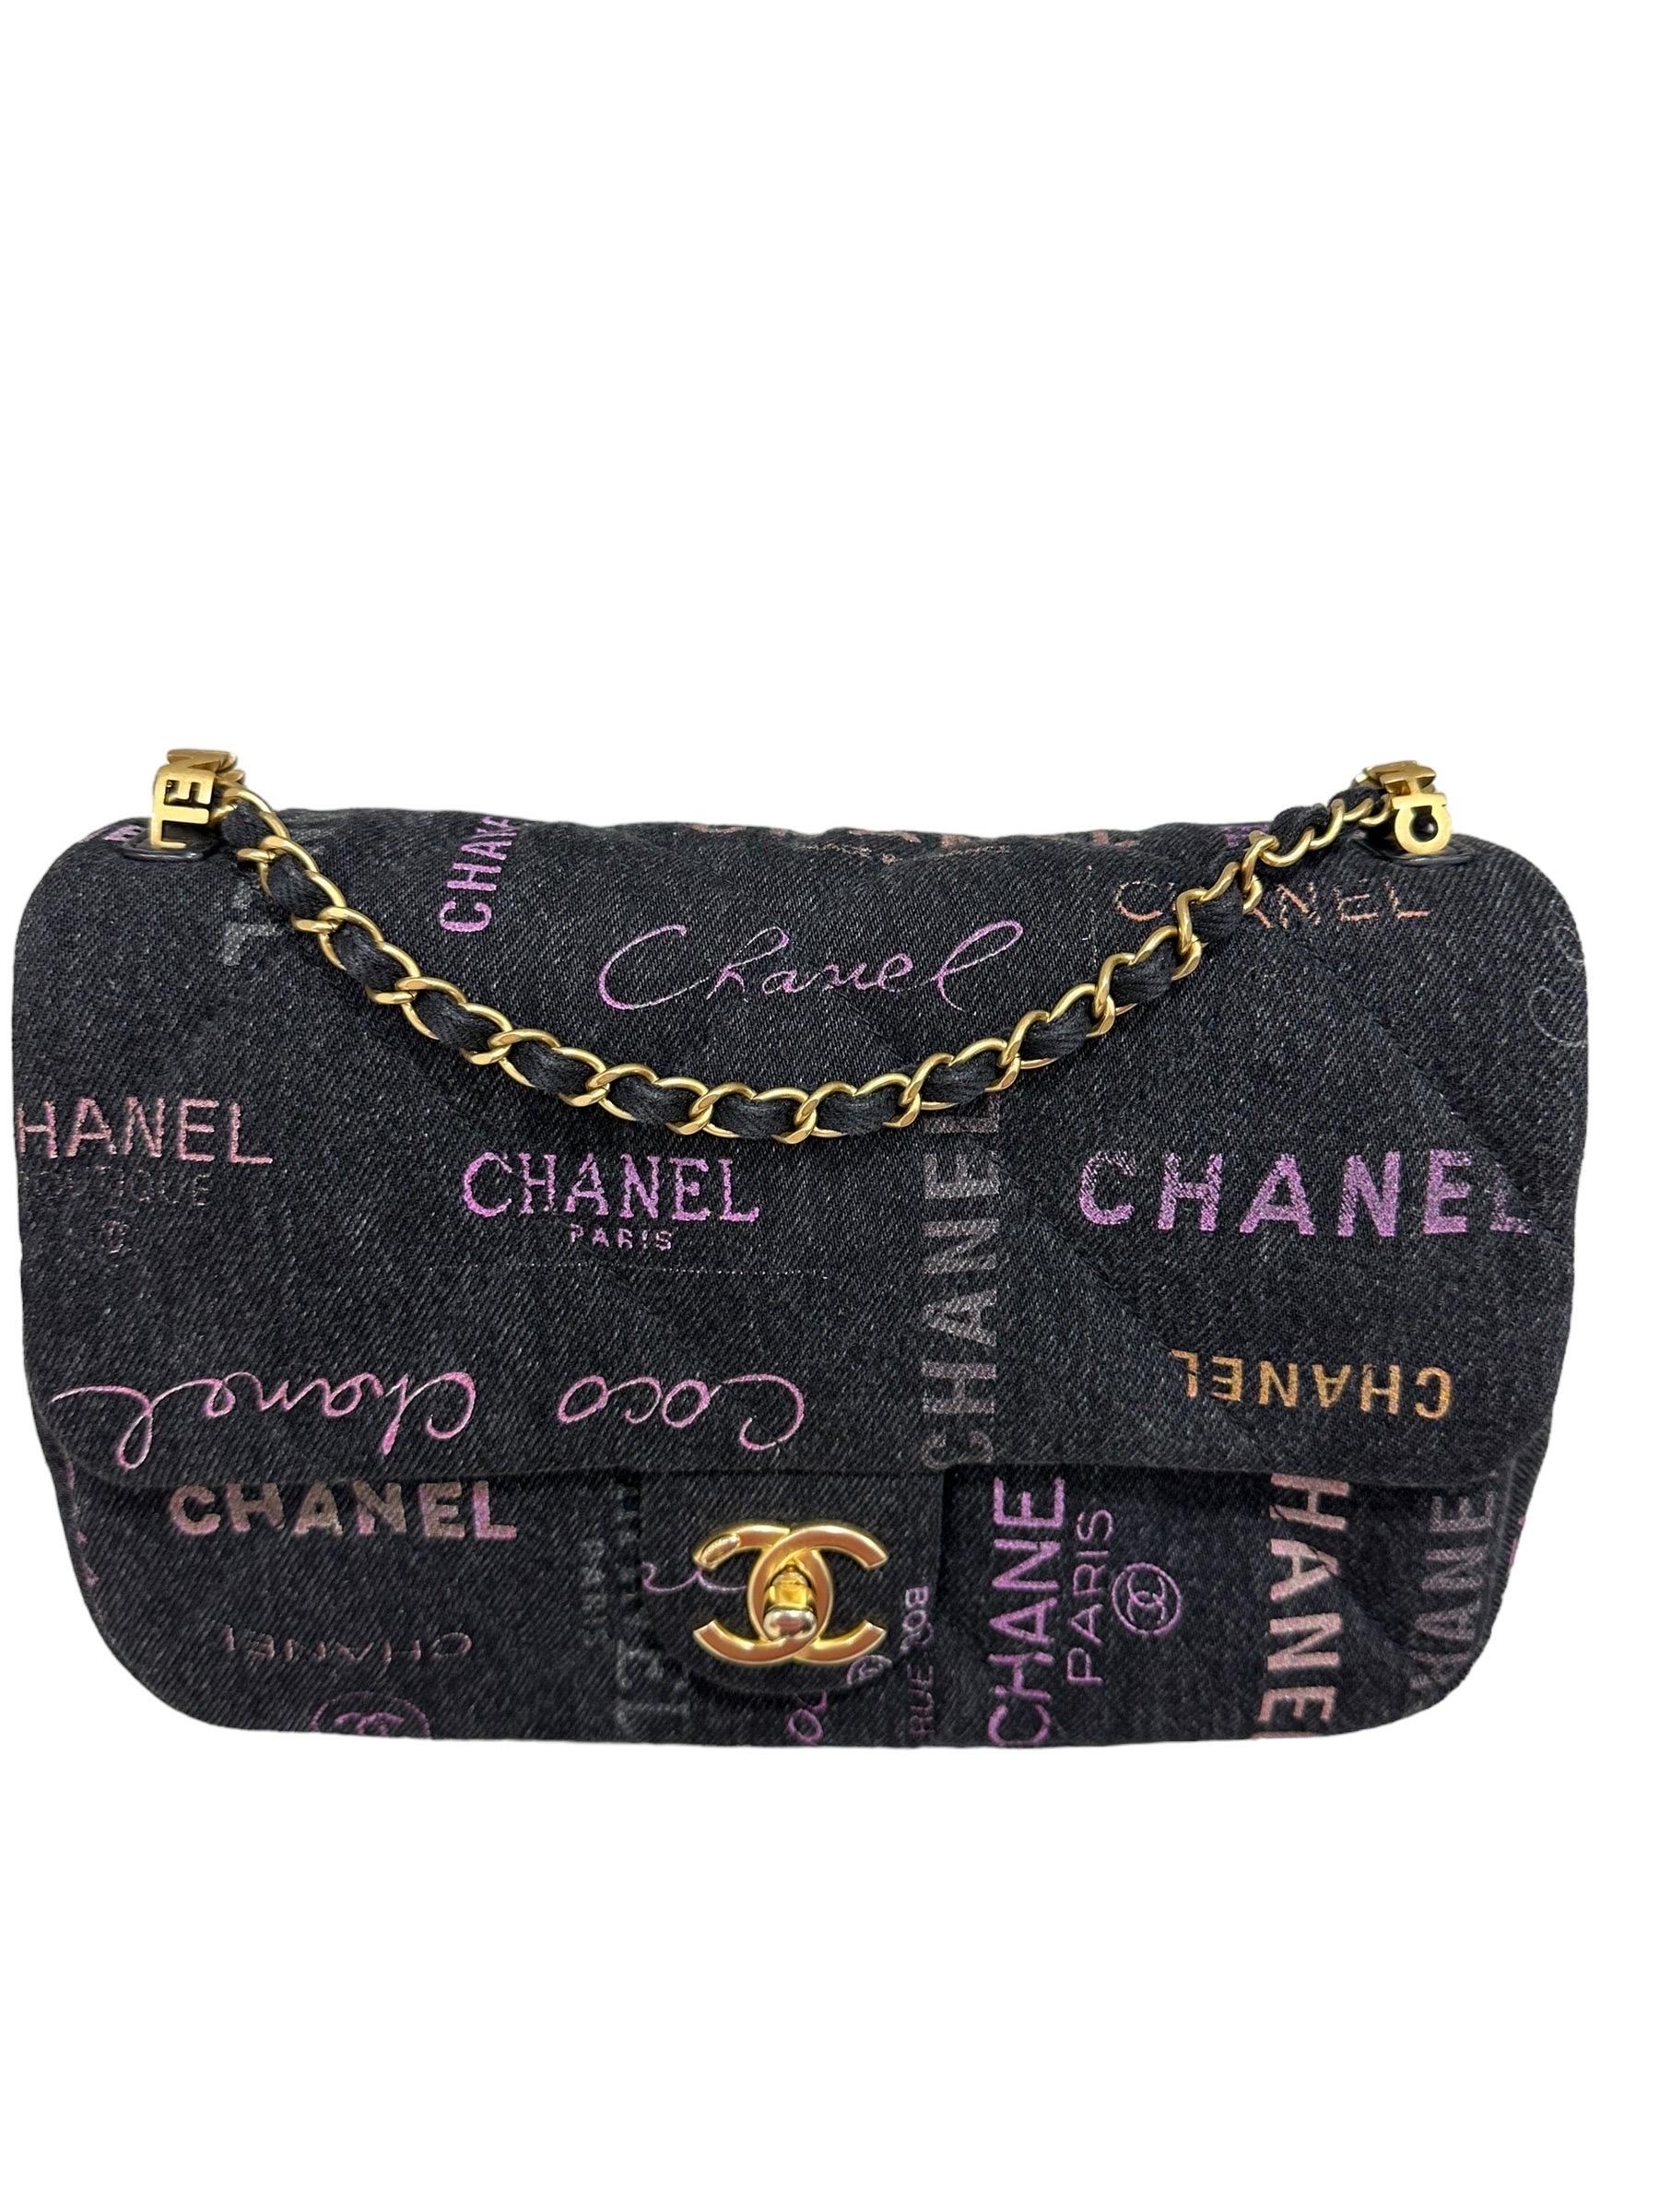 Borsa firmata Chanel, modello 2.55 Graffiti, realizzat in tessuto denim nero con hardware dorati. Doté d'une patte avec chiusura ad  girello logo CC, internamente rivestita in tela tono su tono, ababstanza capiente. Munita di una tracolla scorrevola